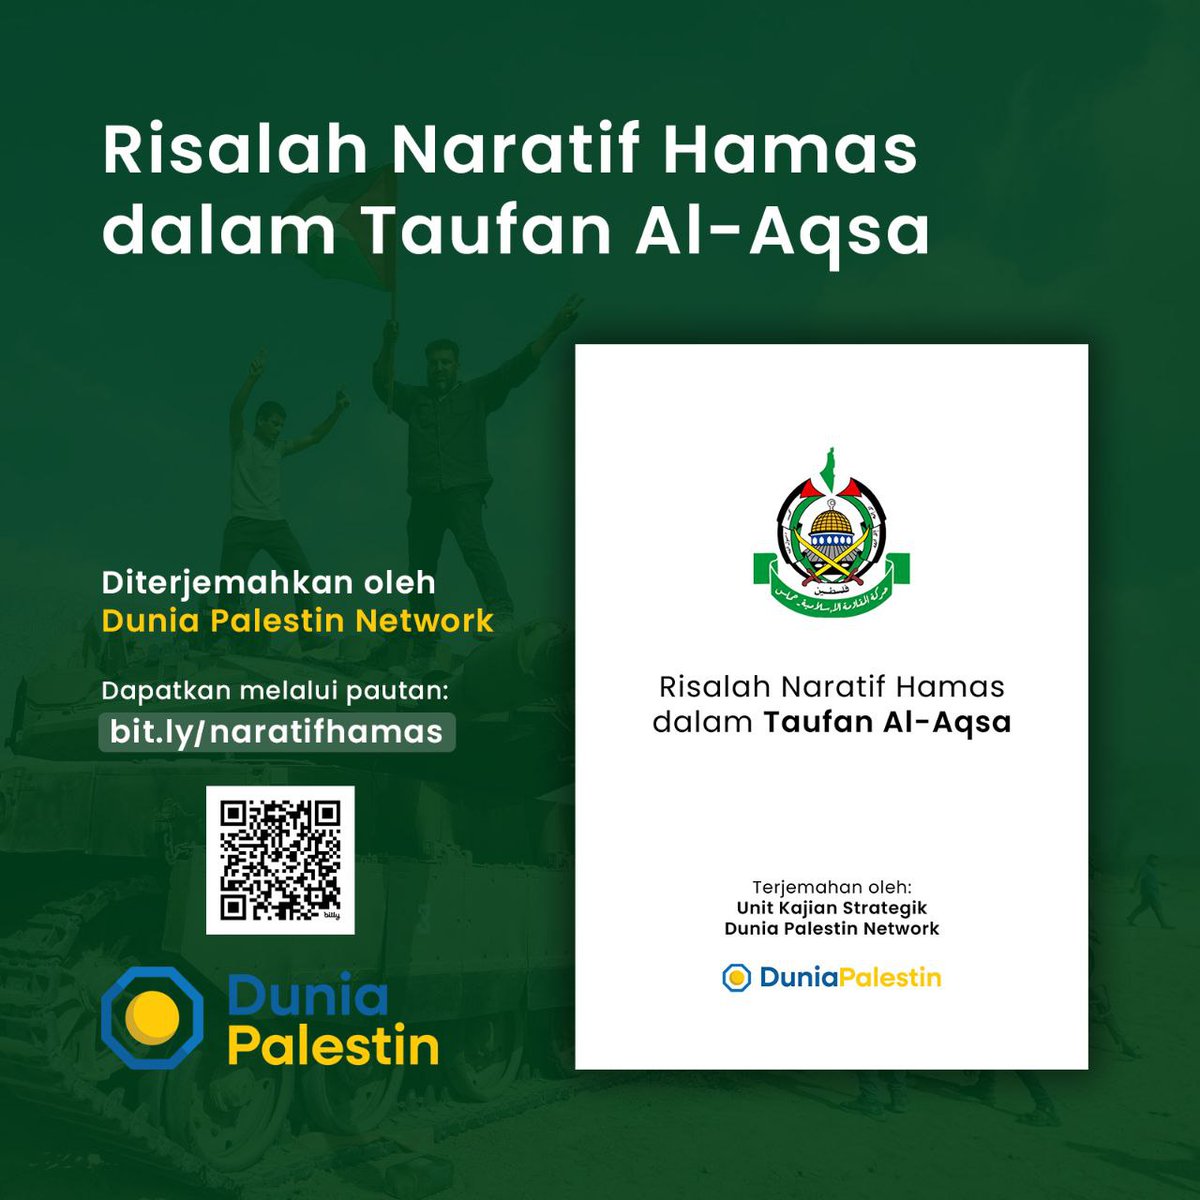 Risalah Naratif Hamas dalam Taufan Al-Aqsa adalah e-book terjemahan Bahasa Melayu dokumen yang dikeluarkan Hamas bertajuk 'Naratif Kami, Taufan Al-Aqsa' yang diterbitkan oleh Pejabat Media Hamas. Dapatkan e-book ini di sini: bit.ly/naratifhamas